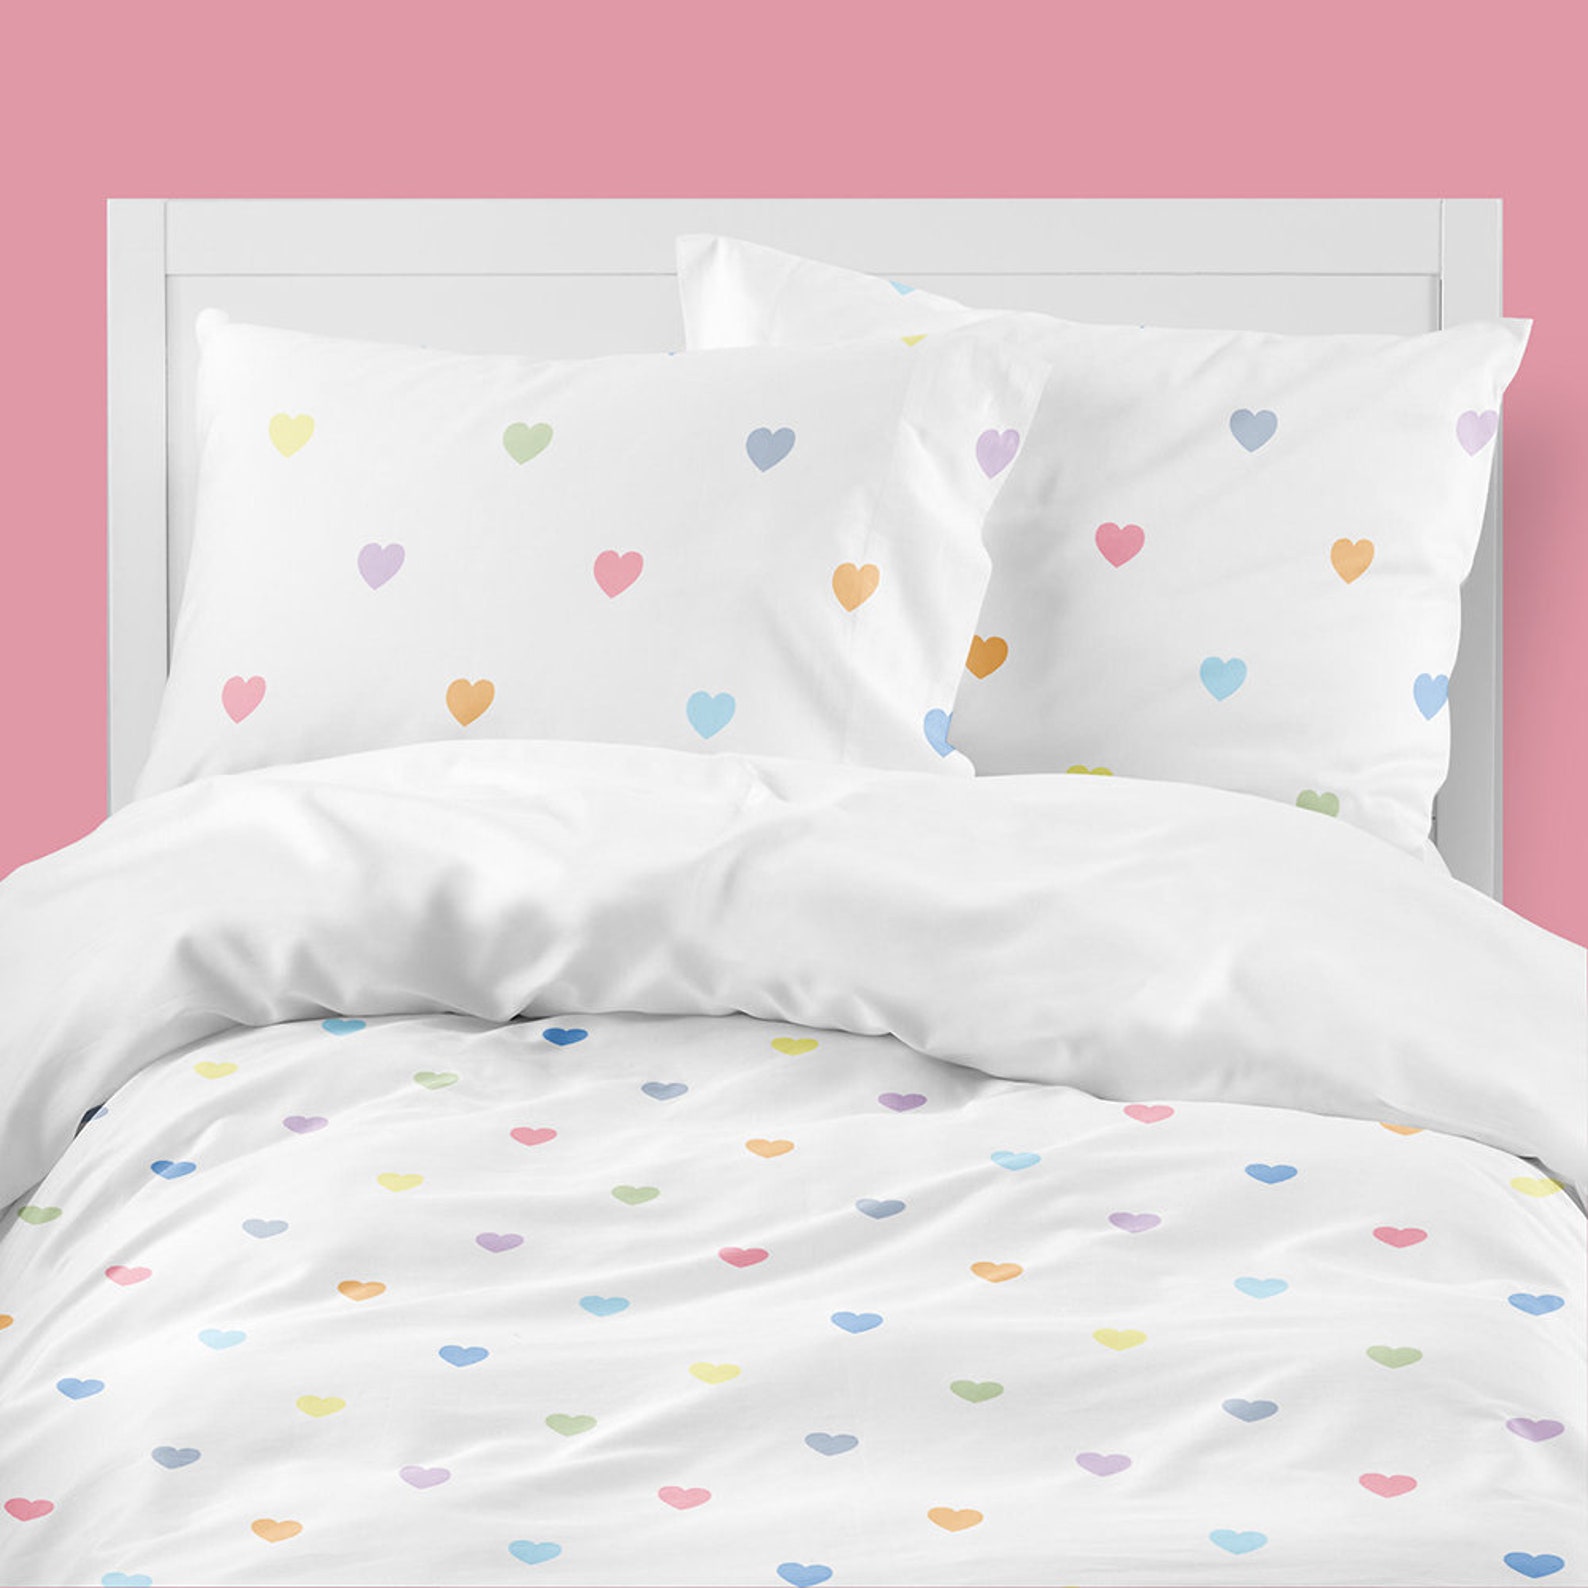 Постель или пастель кровать. Пастель кровать сердце. Пастель в кровать будто с нарисованными сердечками серыми. Disney Ariel/little Mermaid Reversible 100% Cotton Duvet Cover and Pillowcase Set, Toddler, d15-628.